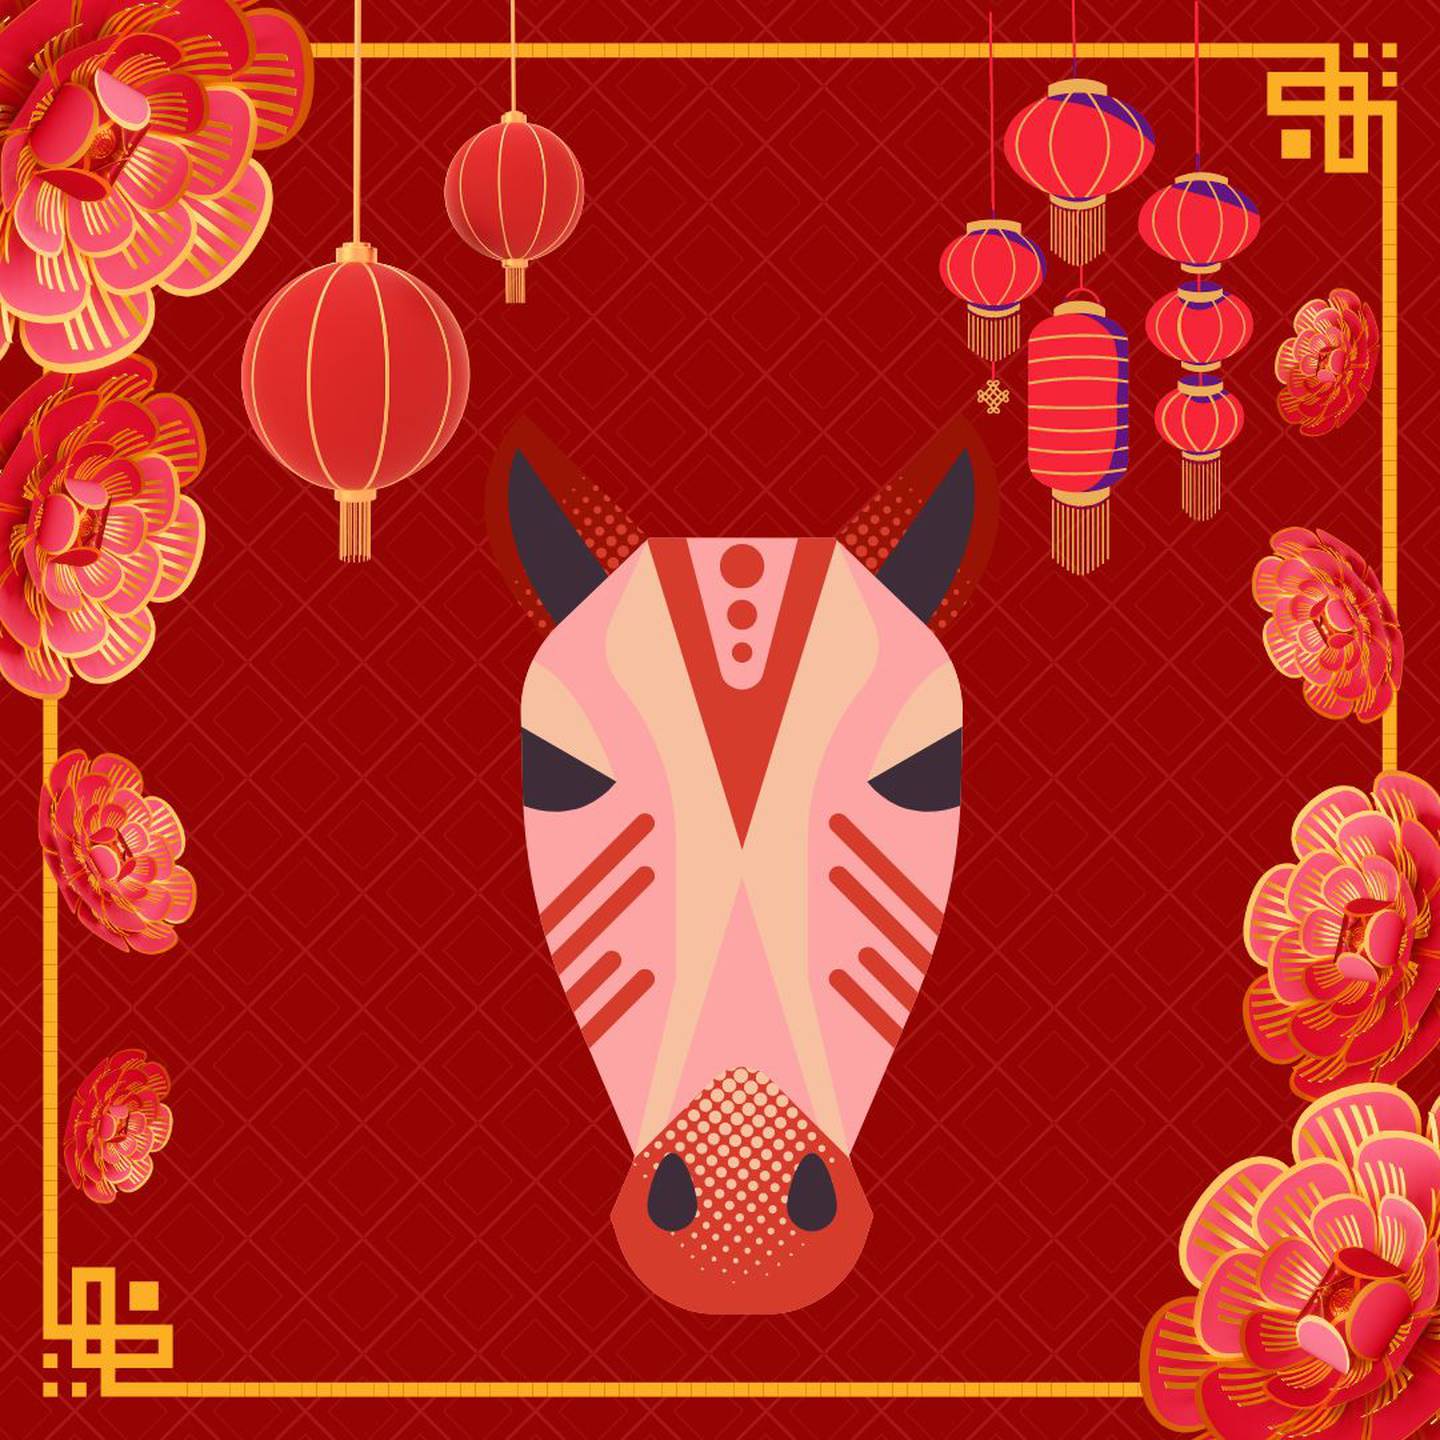 Caricatura de la cabeza de un caballo sobre un fondo rojo con motivos decorativos orientales.